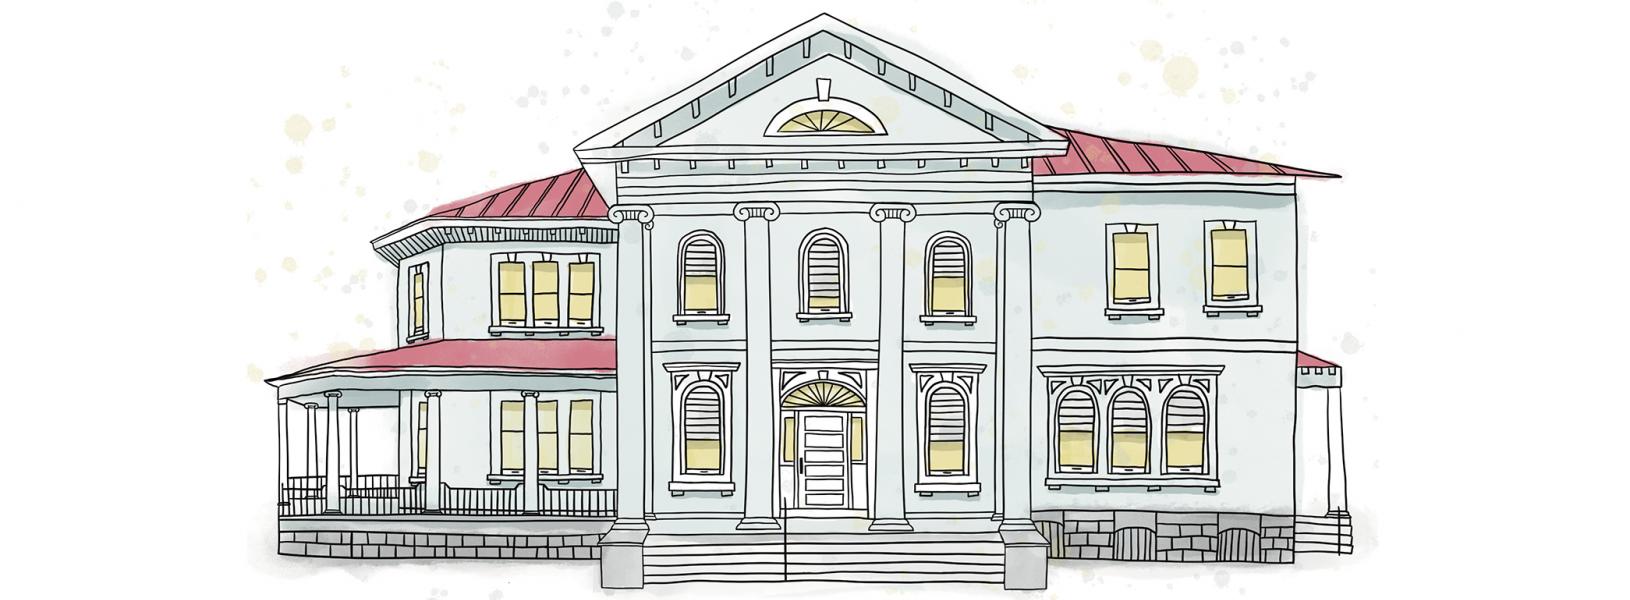 Illustration of Macklem House